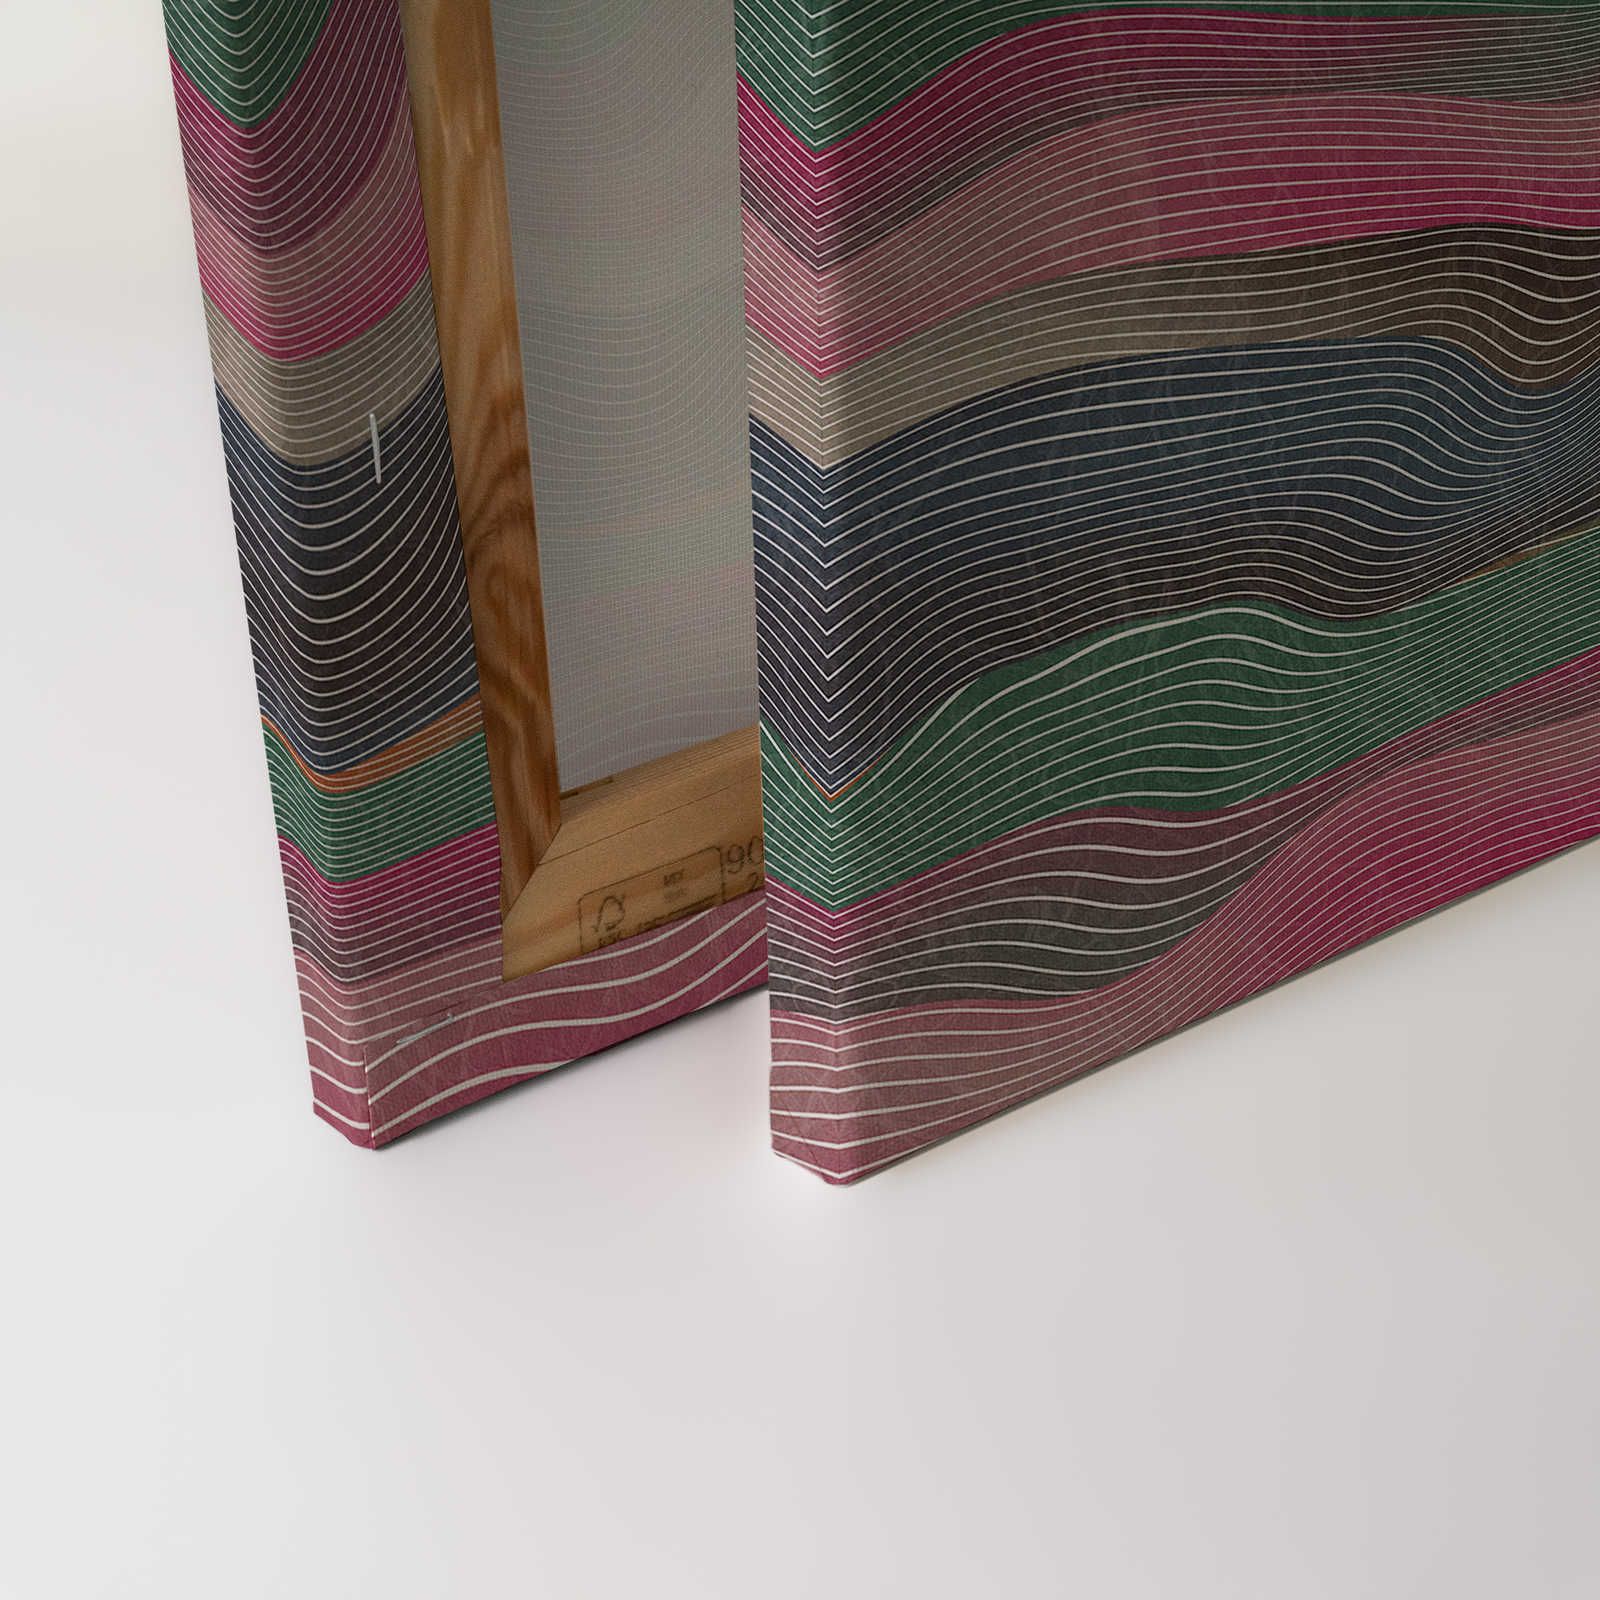             Space 1 - Leinwandbild Wellen Muster Pink & Grün im Retro Stil – 0,90 m x 0,60 m
        